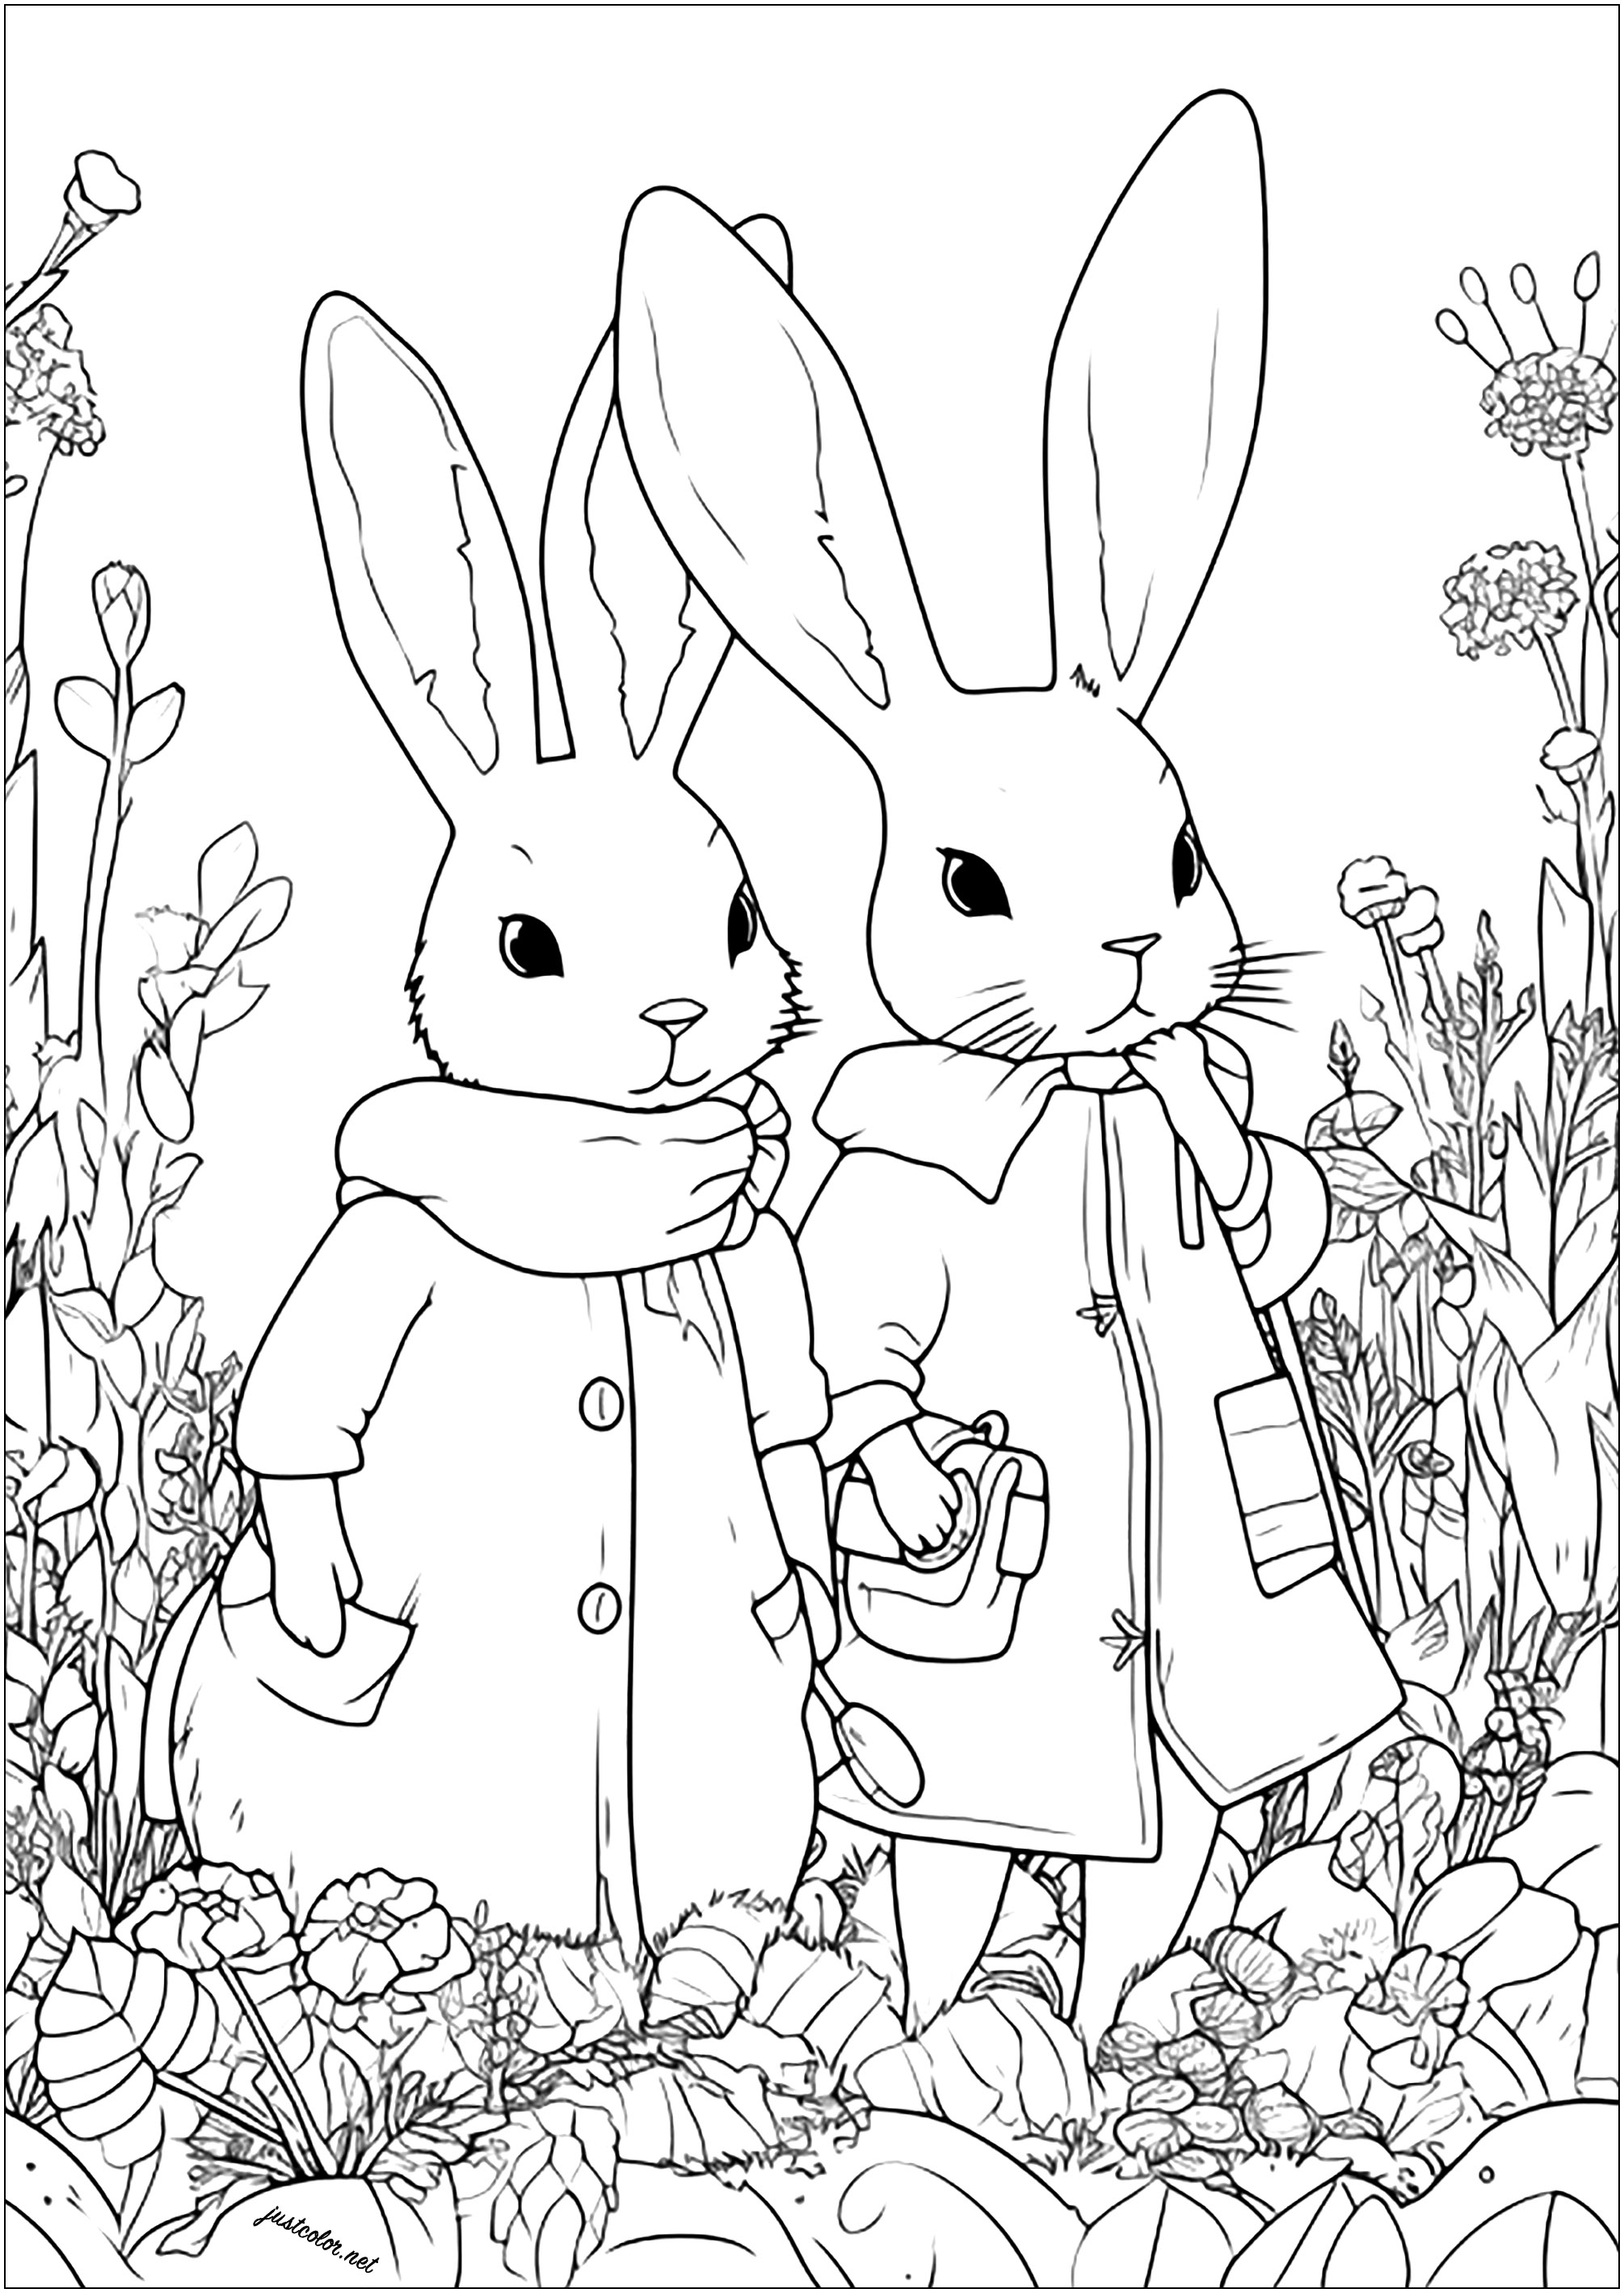 Deux lapins aventuriers dans un champ de fleurs. Lapins dessinés avec un style unique, semblant prêts pour partir vers une aventure ...